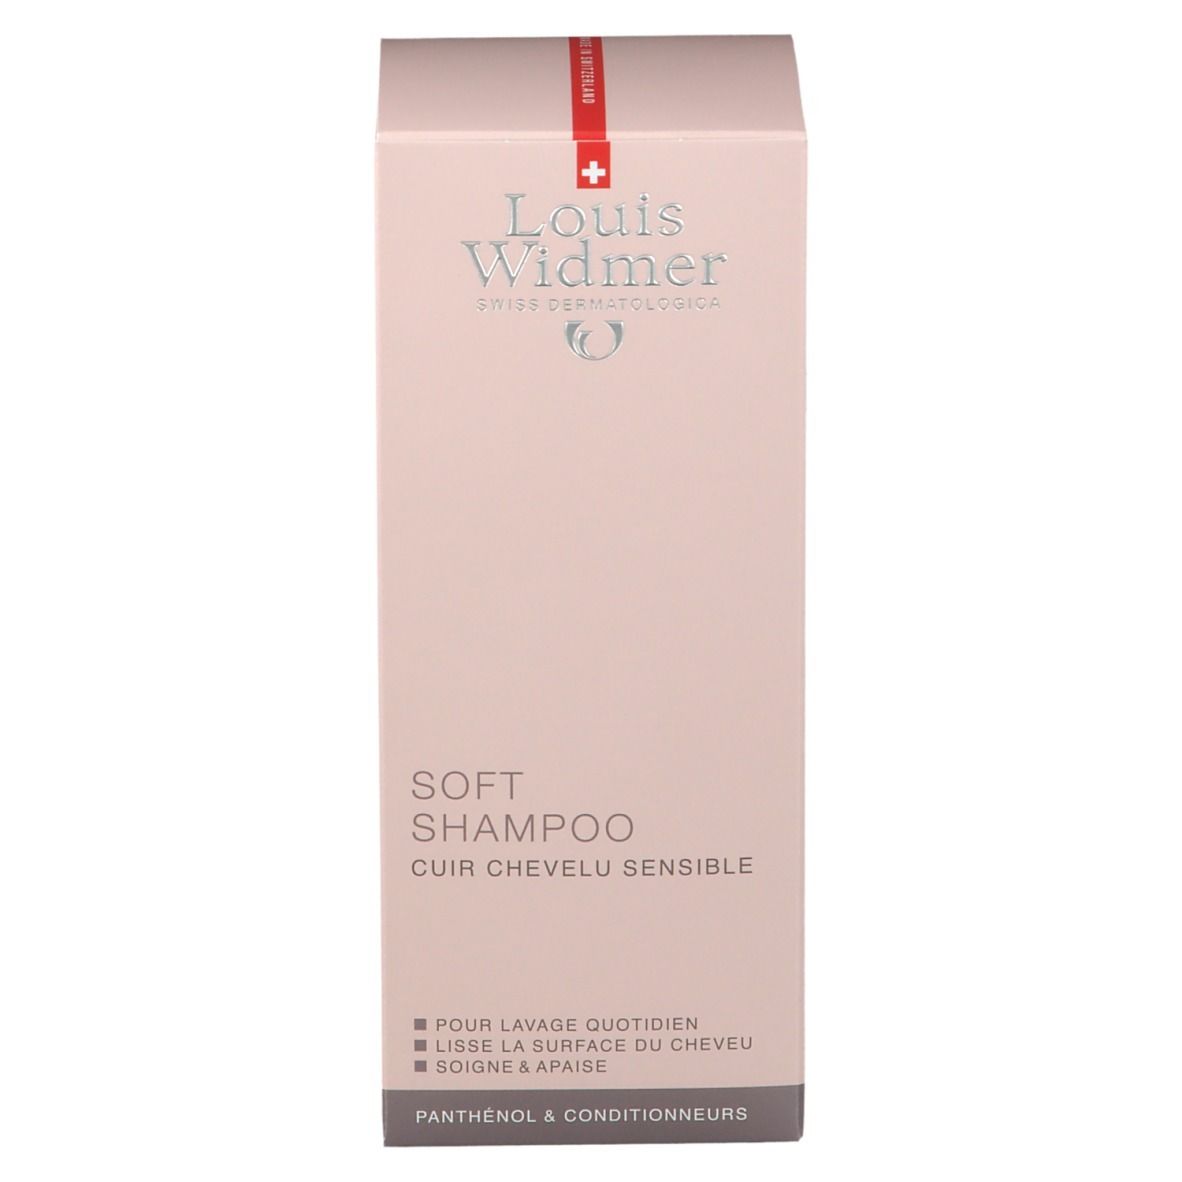 Louis Widmer Soft-Shampoo parfümiert